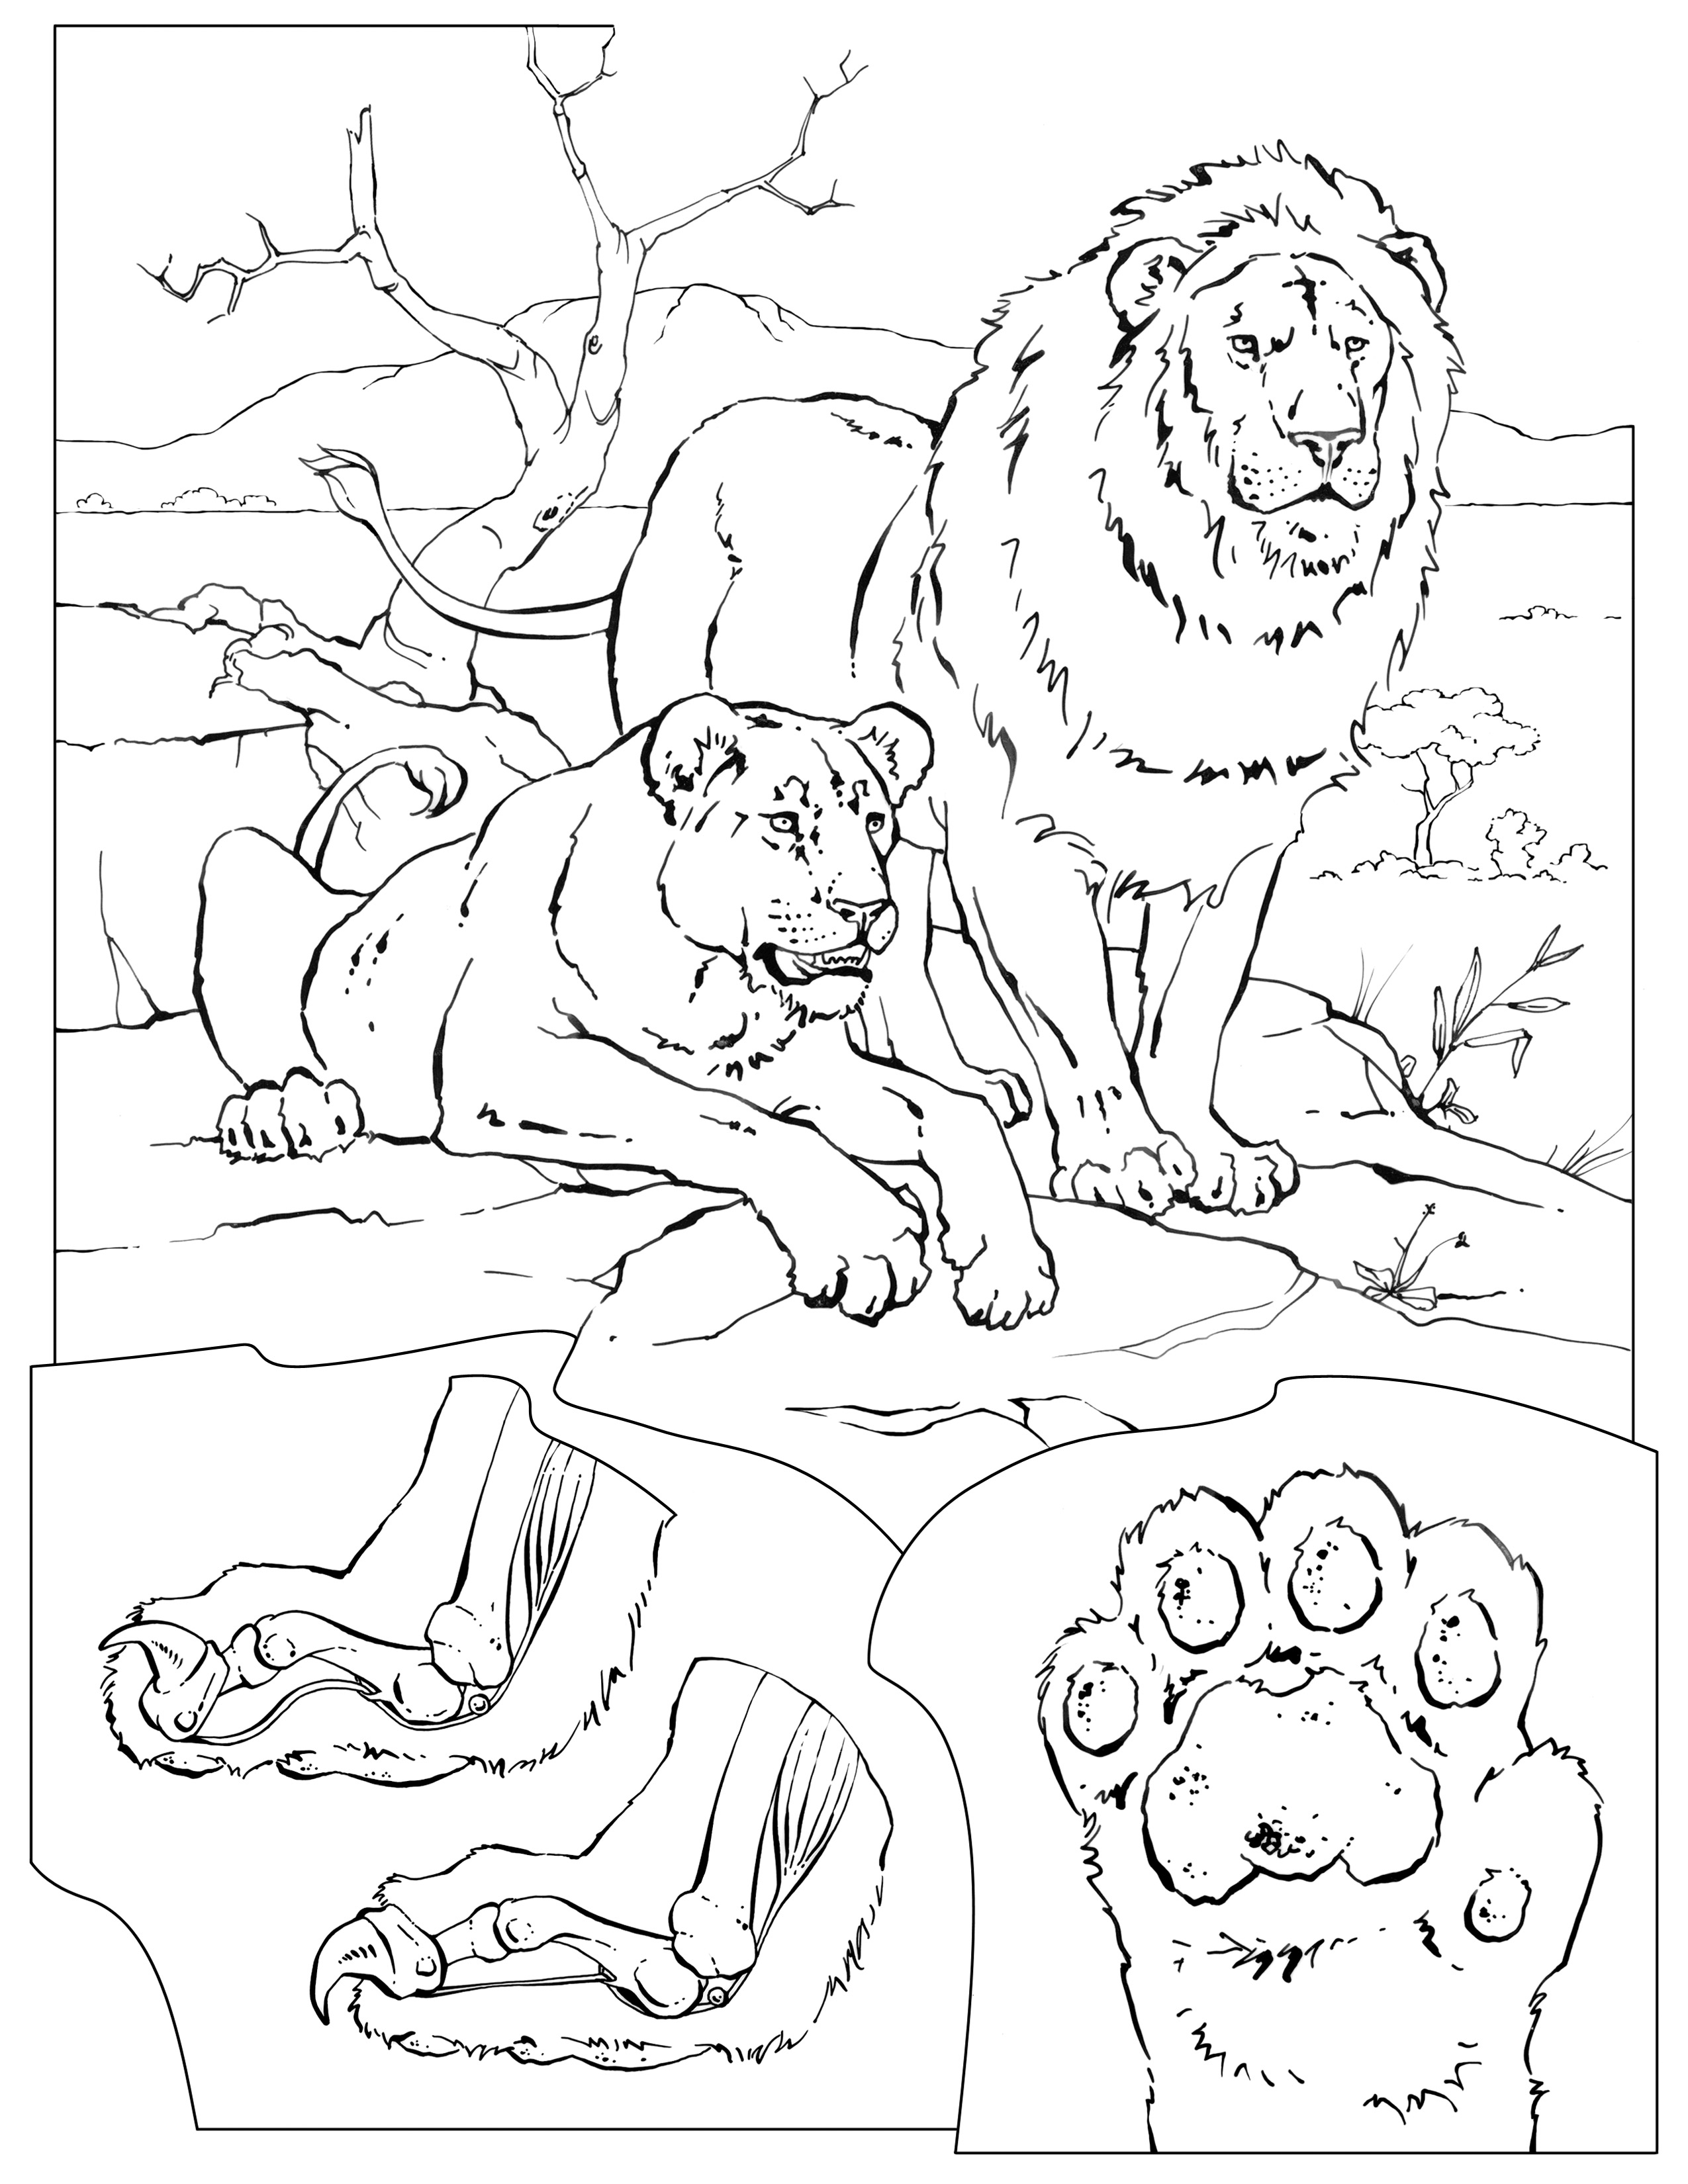 Раскраска Лев и тигр